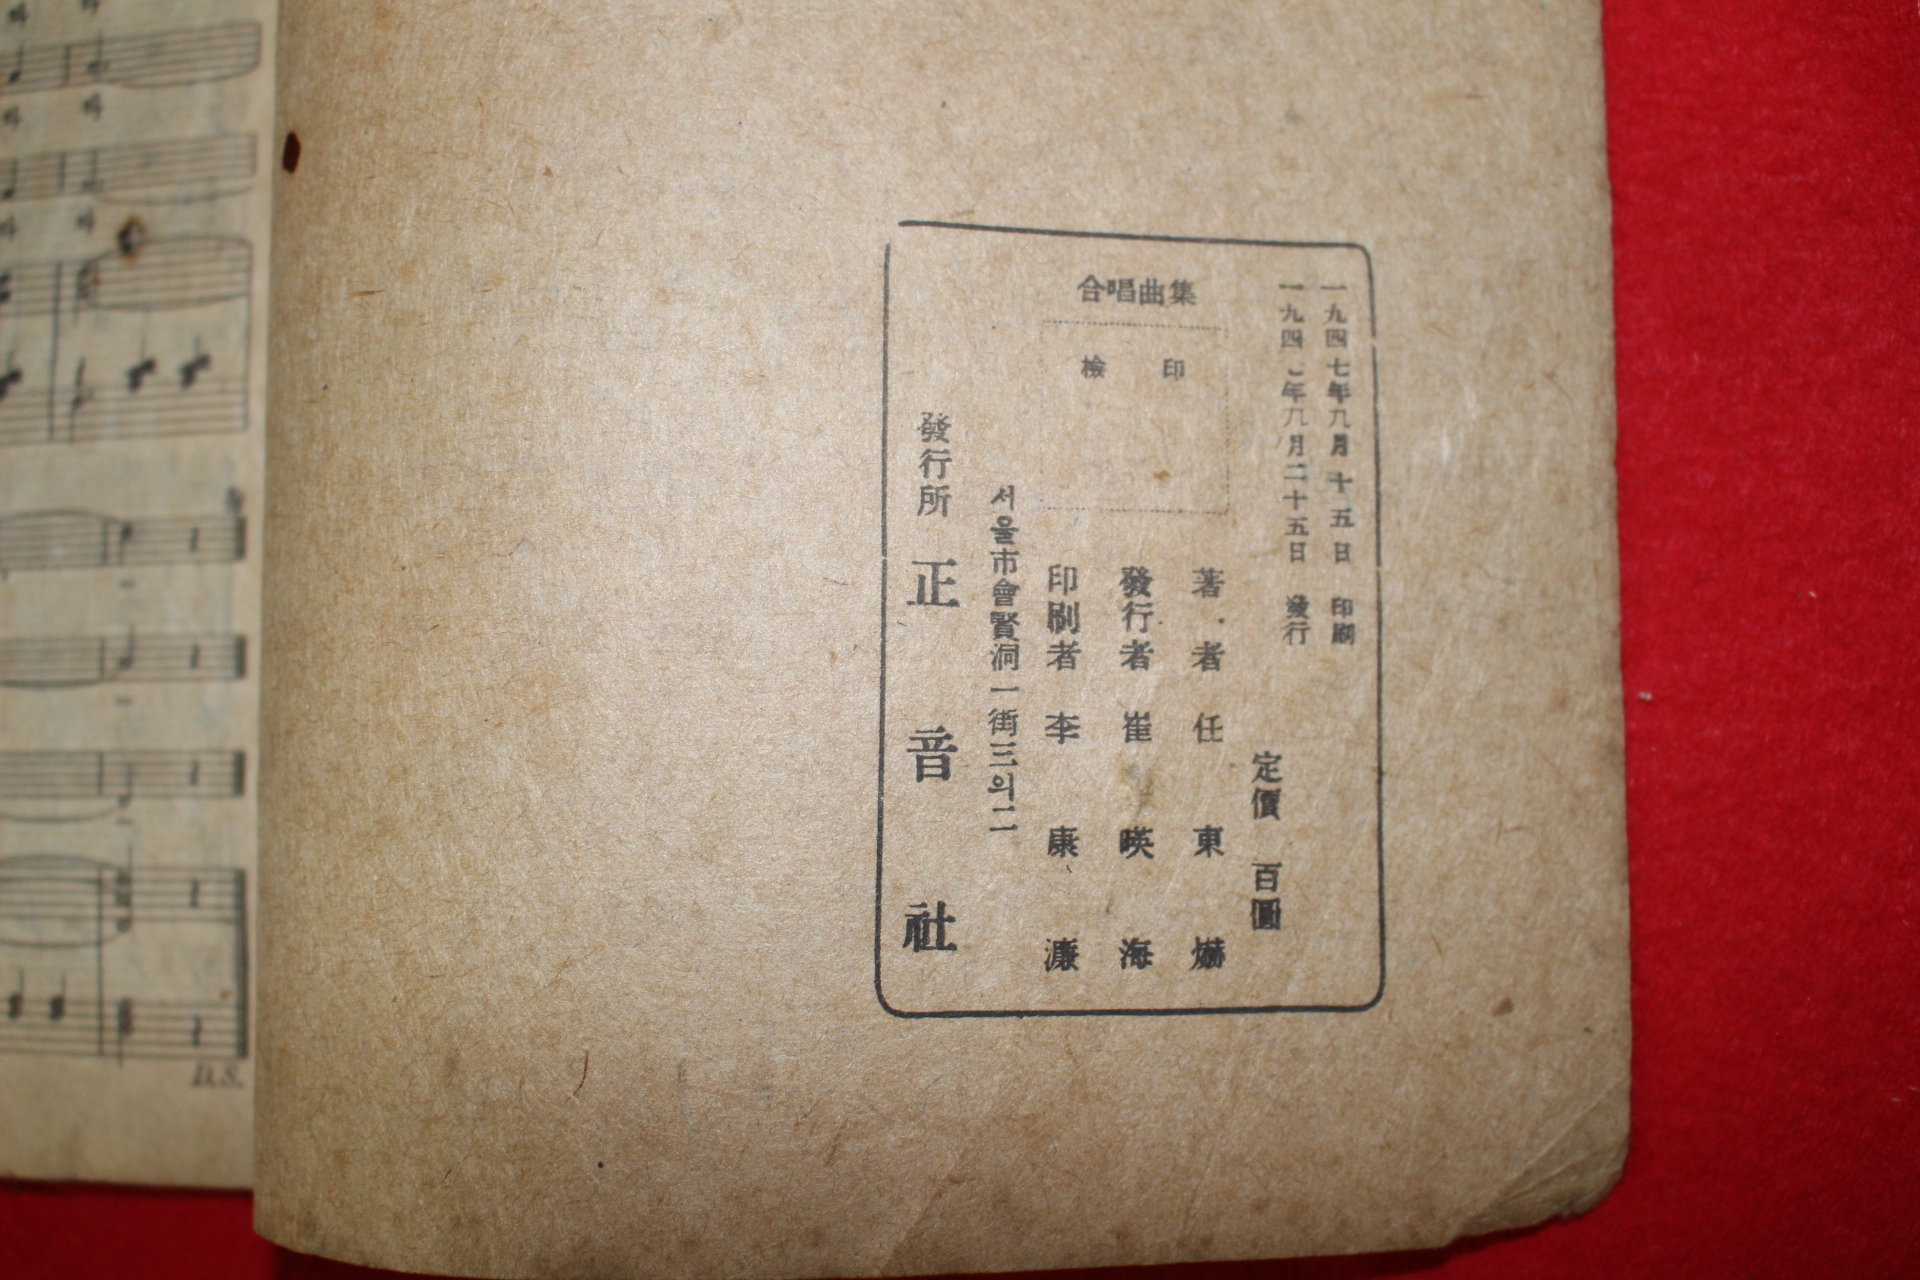 1947년 임동혁(任東爀) 합창곡집(合唱曲集)